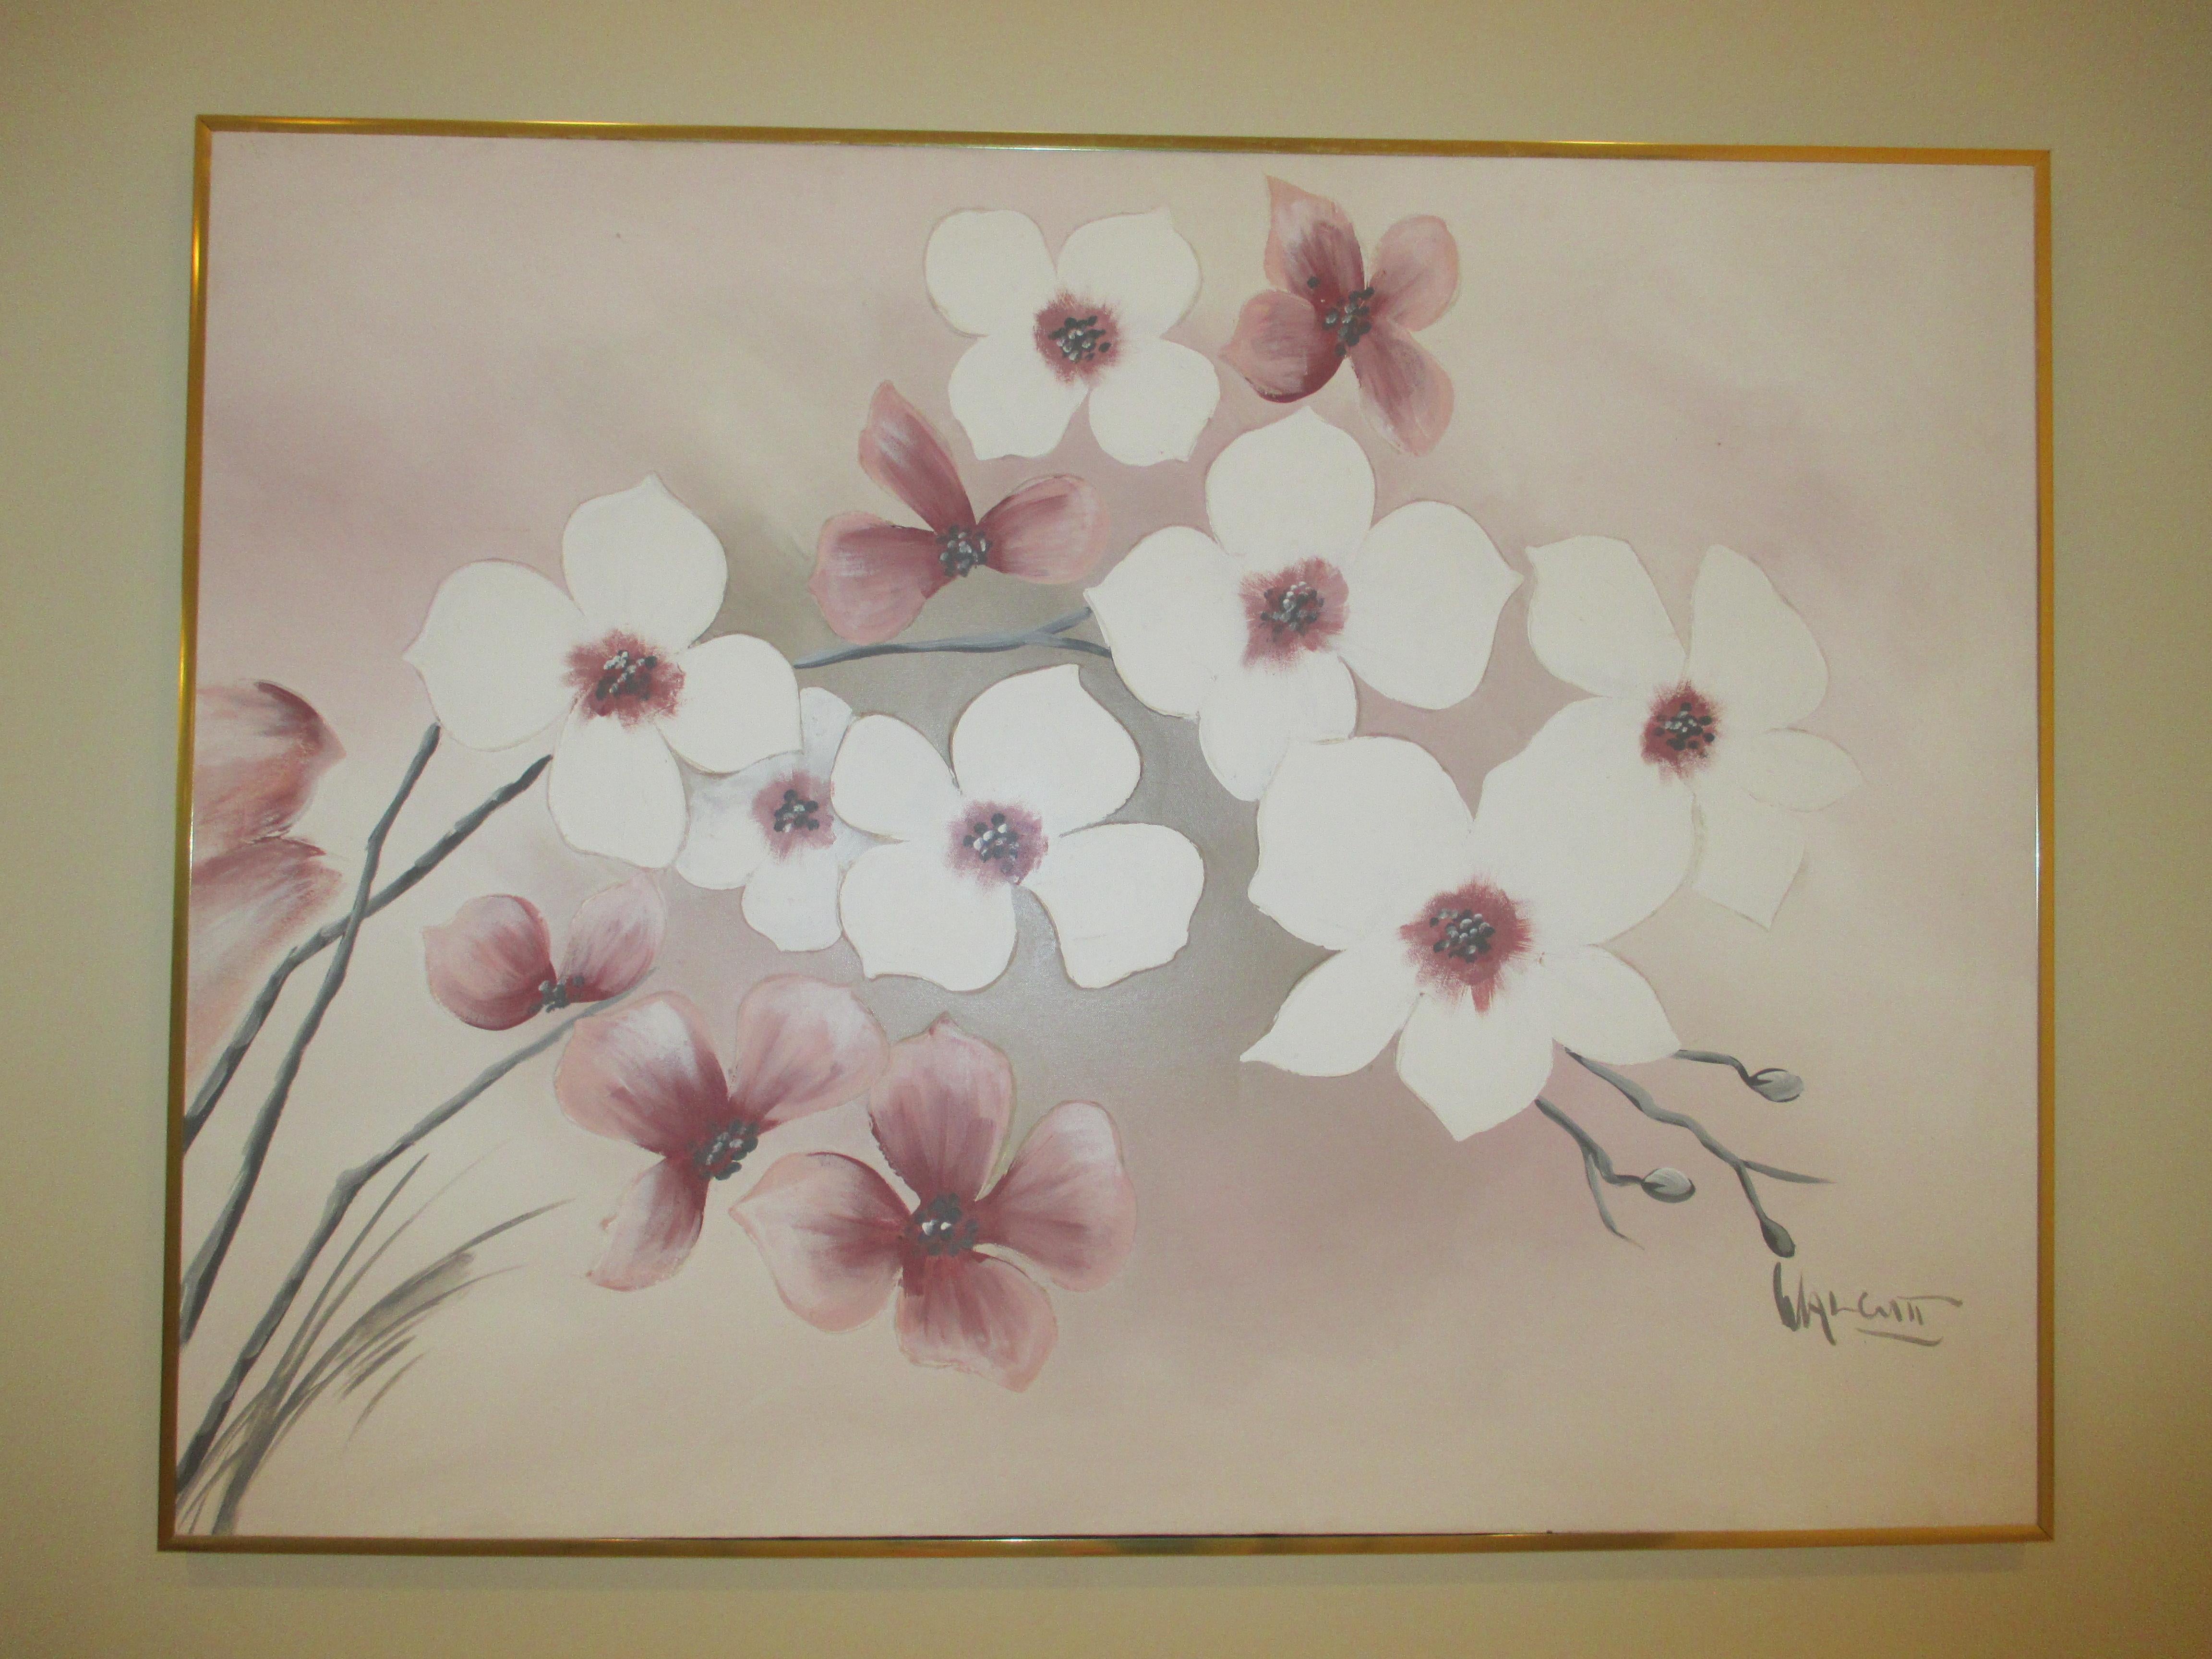 Trending Art Original Painting Folk Art Painting Flower Artwork Large Fine Art Cherry Blossoms Popular Right Now Best Selling Item